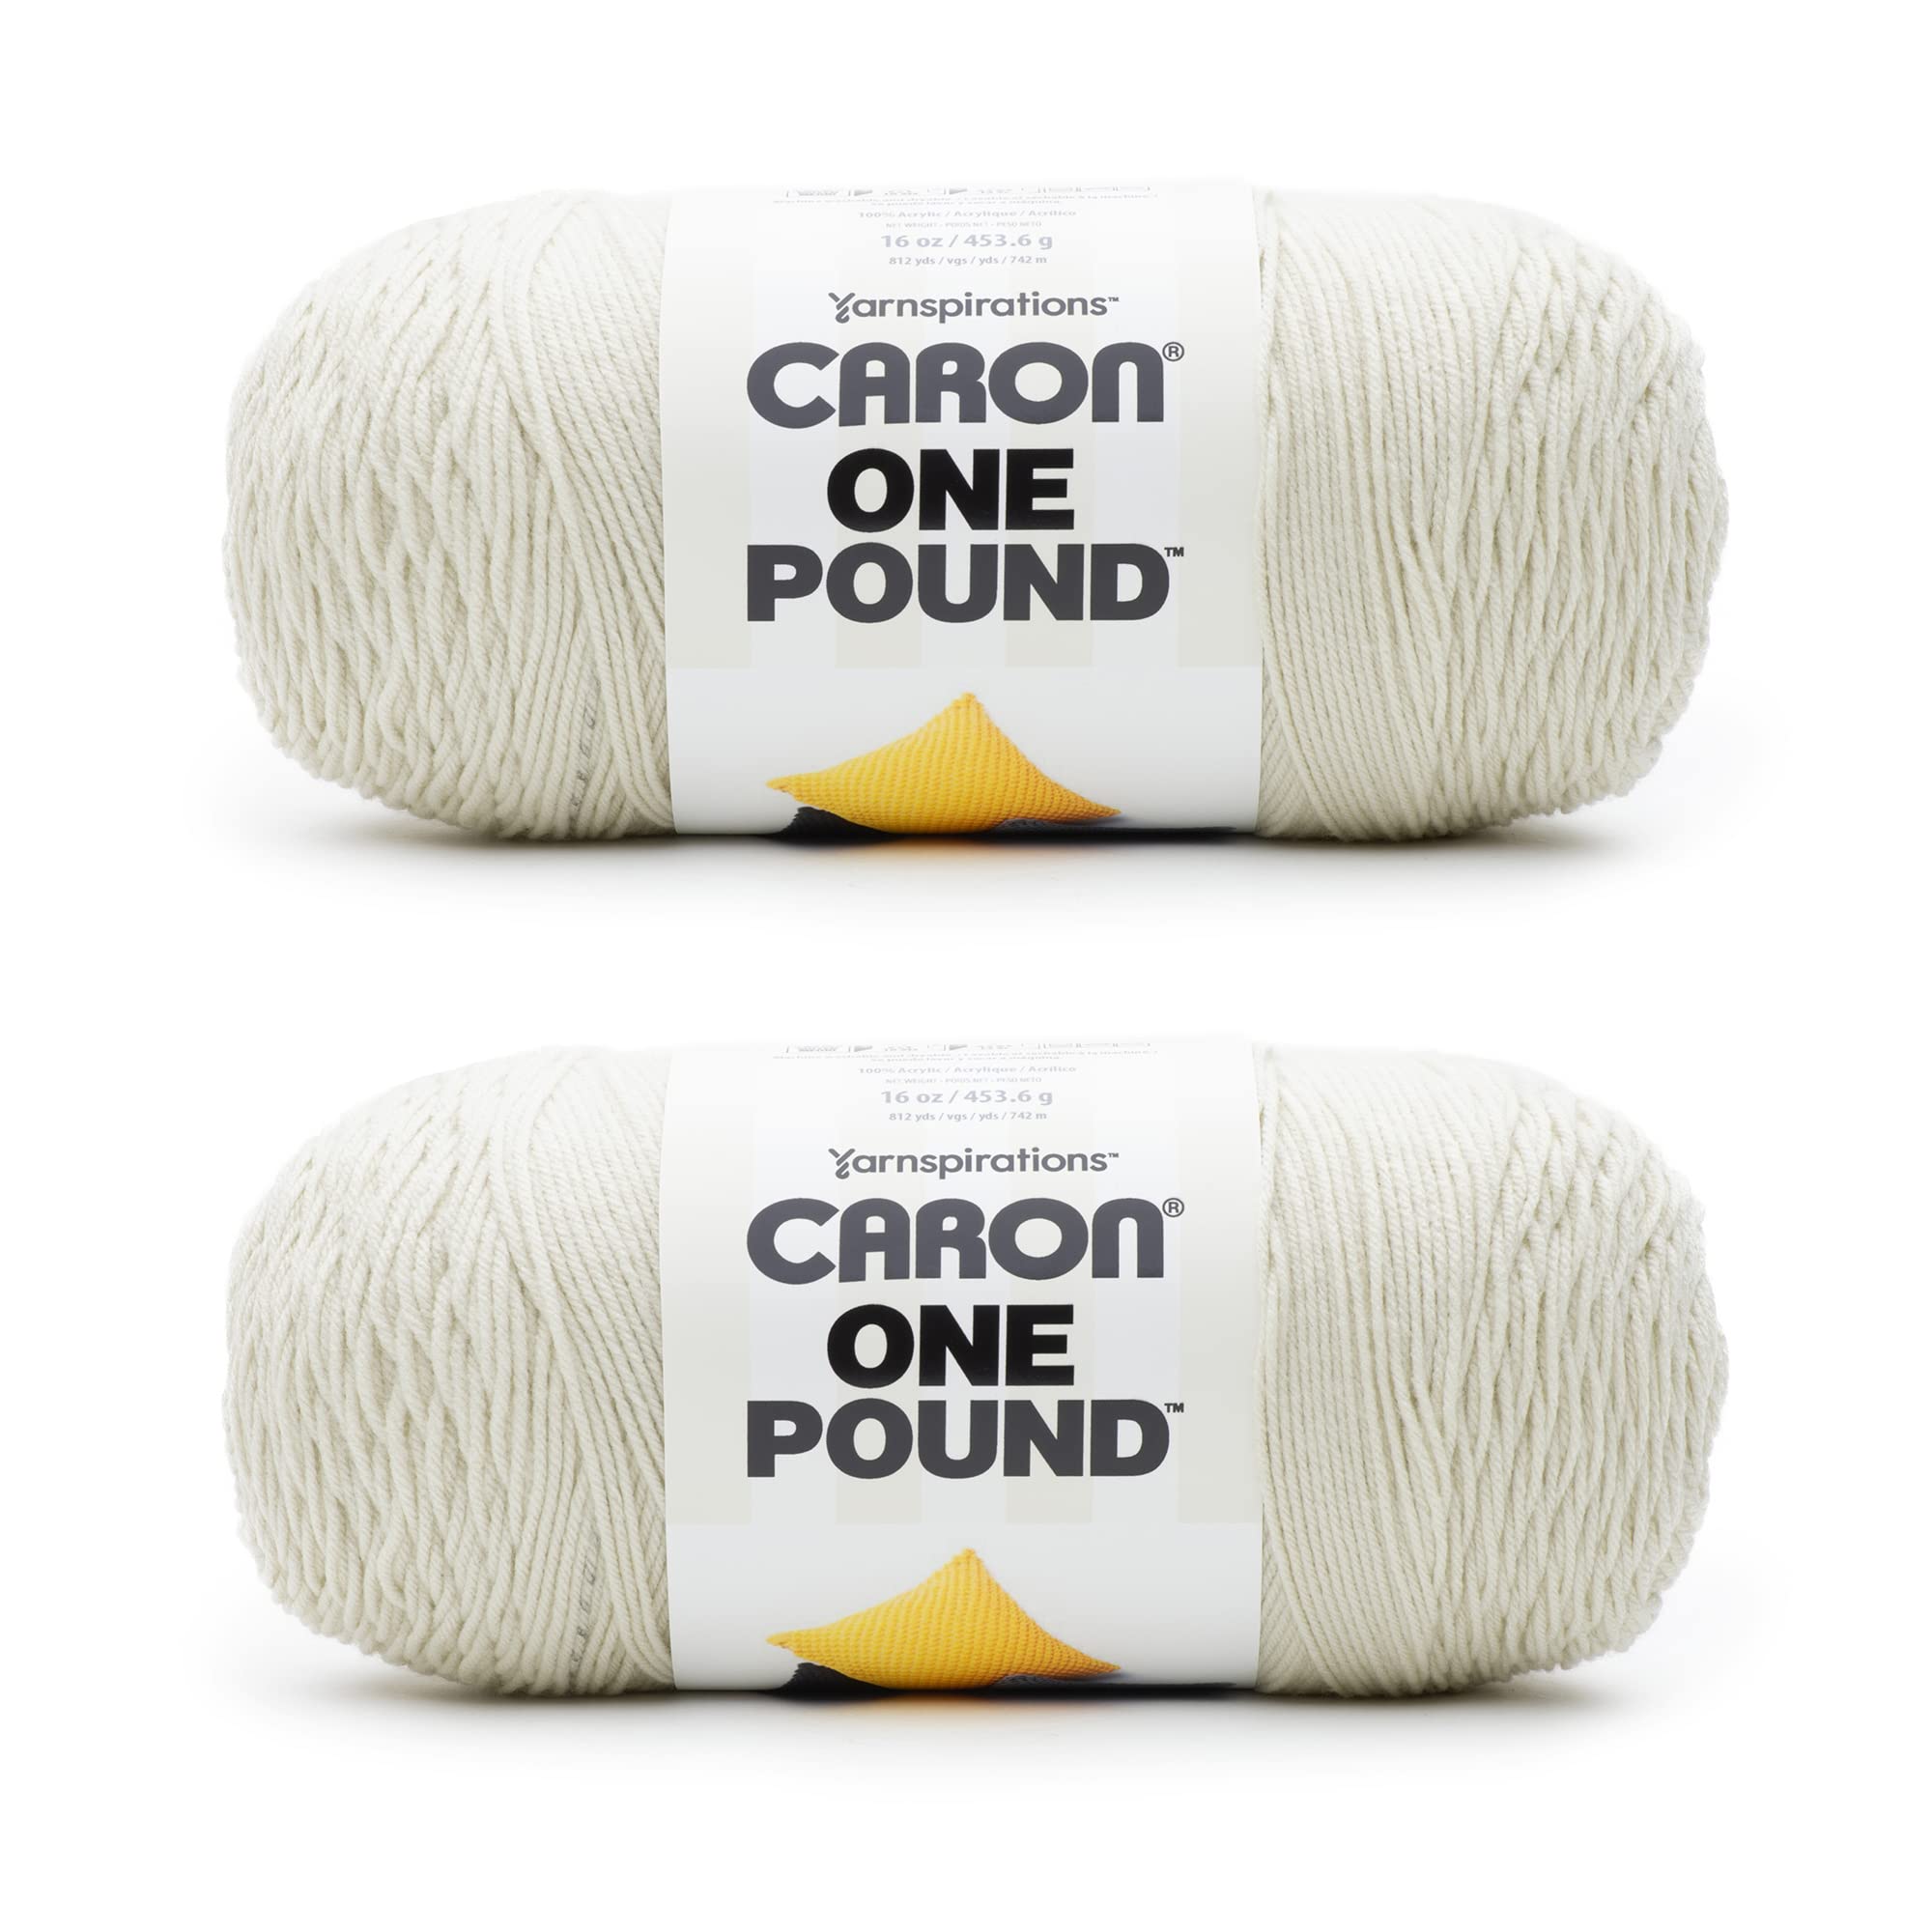 Caron One Pound Off White Yarn - 2 Pack of 454g/16oz - Acrylic - 4 Medium  (Worsted) - 812